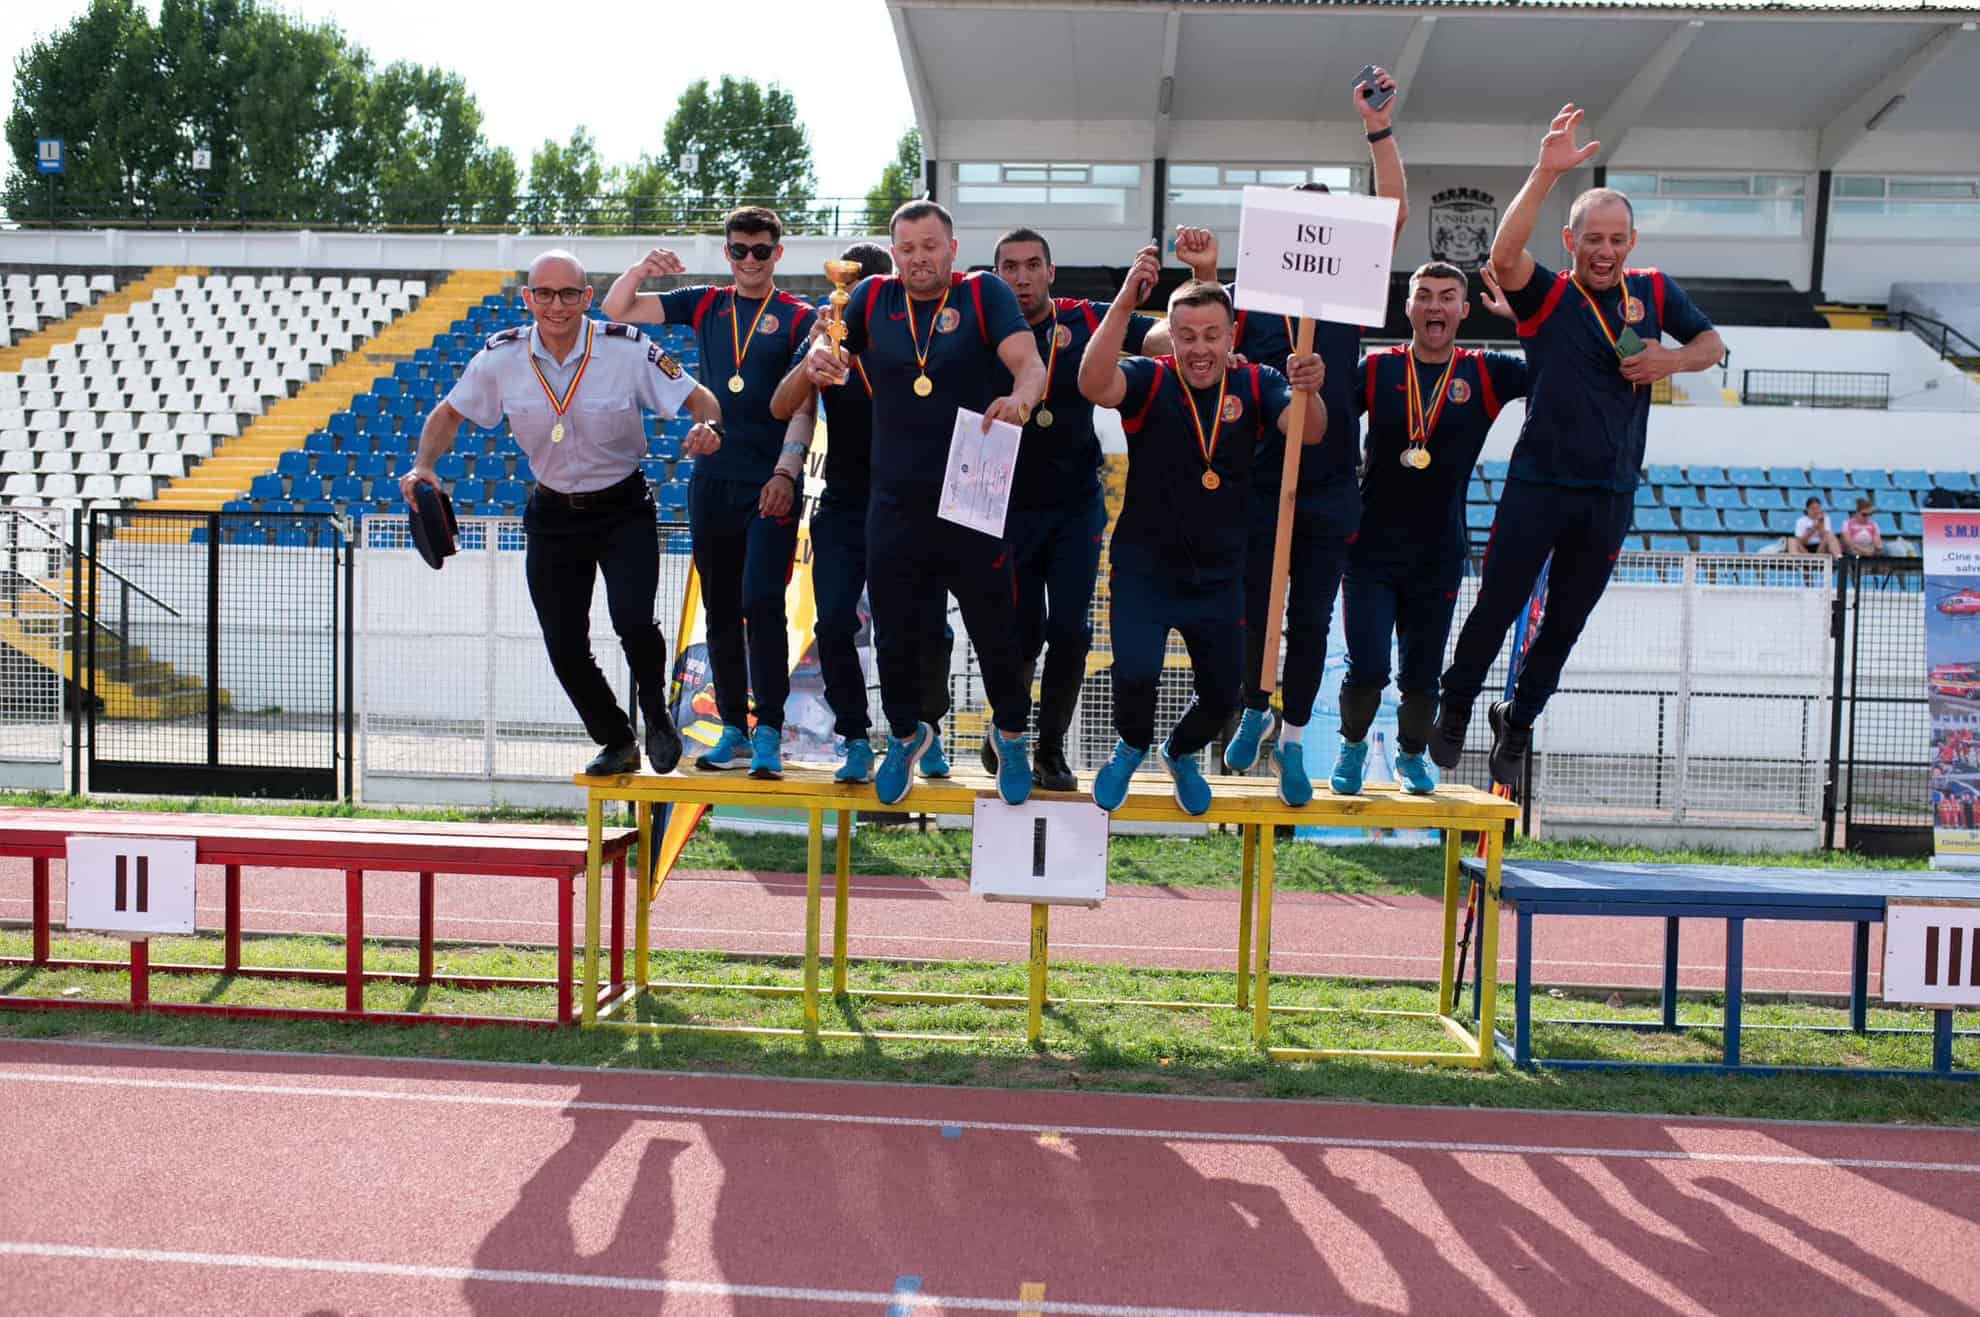 echipa isu sibiu campioană în etapa zonală a concursurilor serviciilor profesioniste pentru situații de urgență (foto)